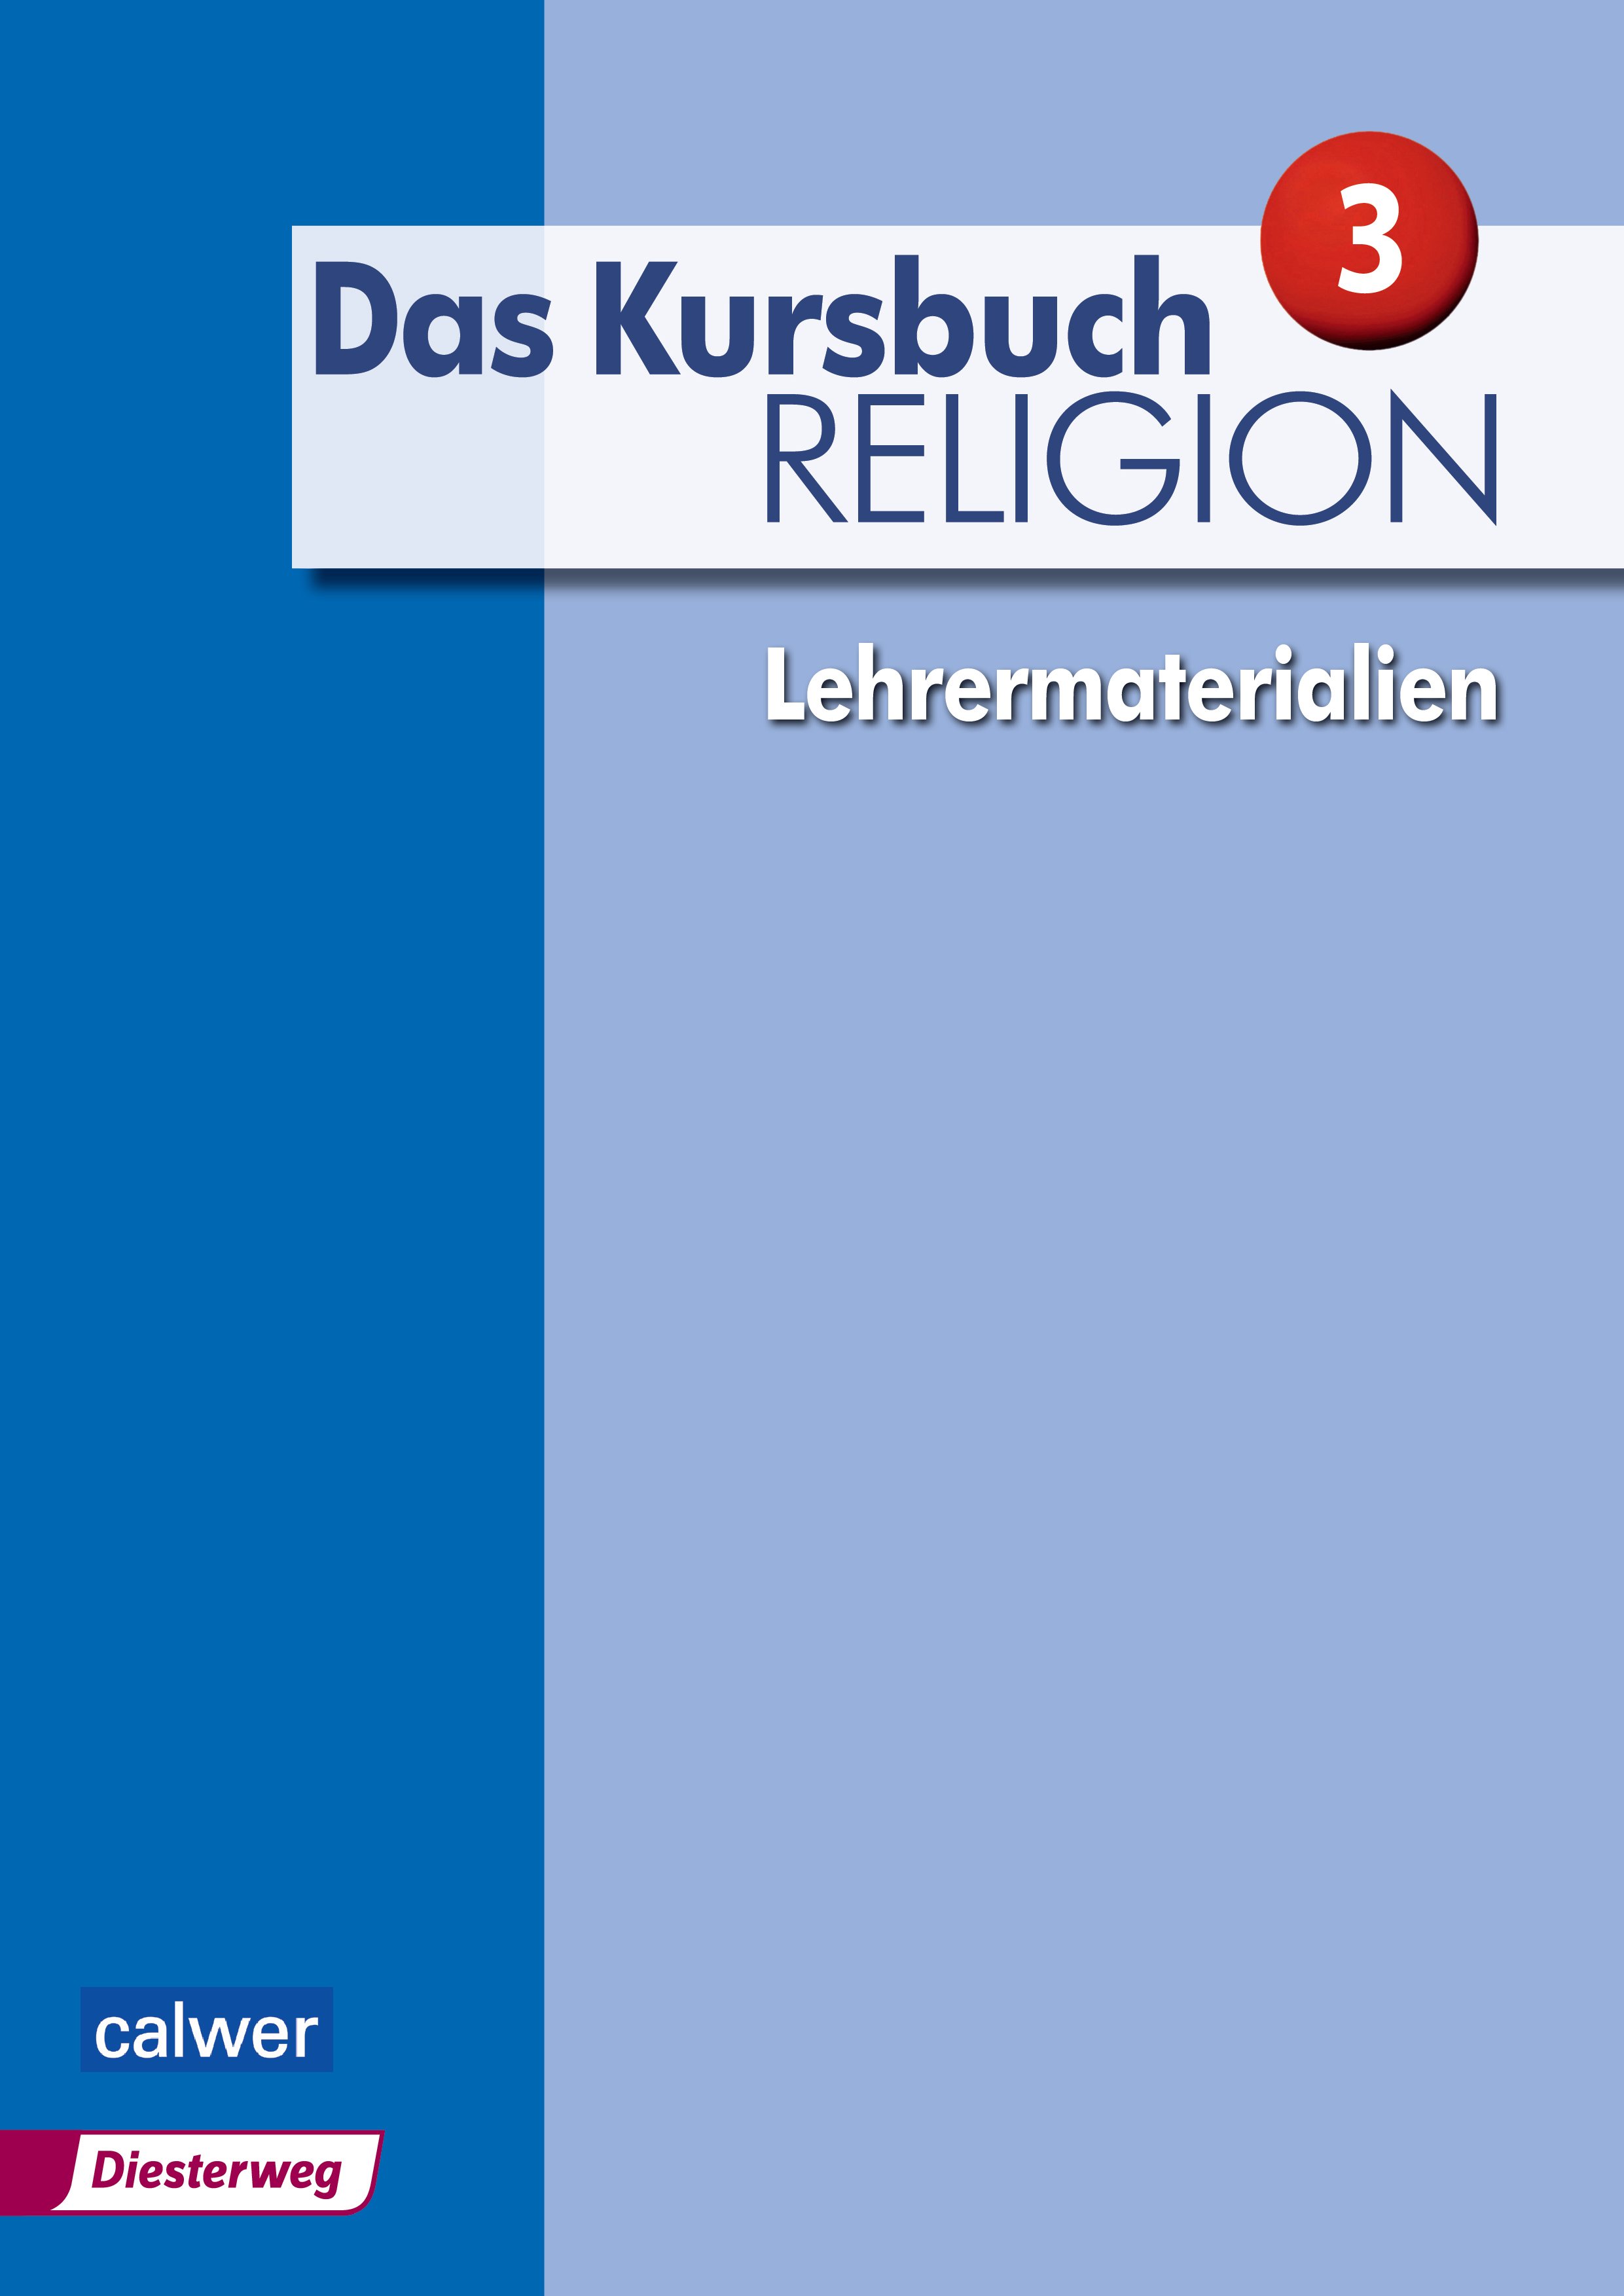 Das Kursbuch Religion 3 - Lehrermaterialien - Cover